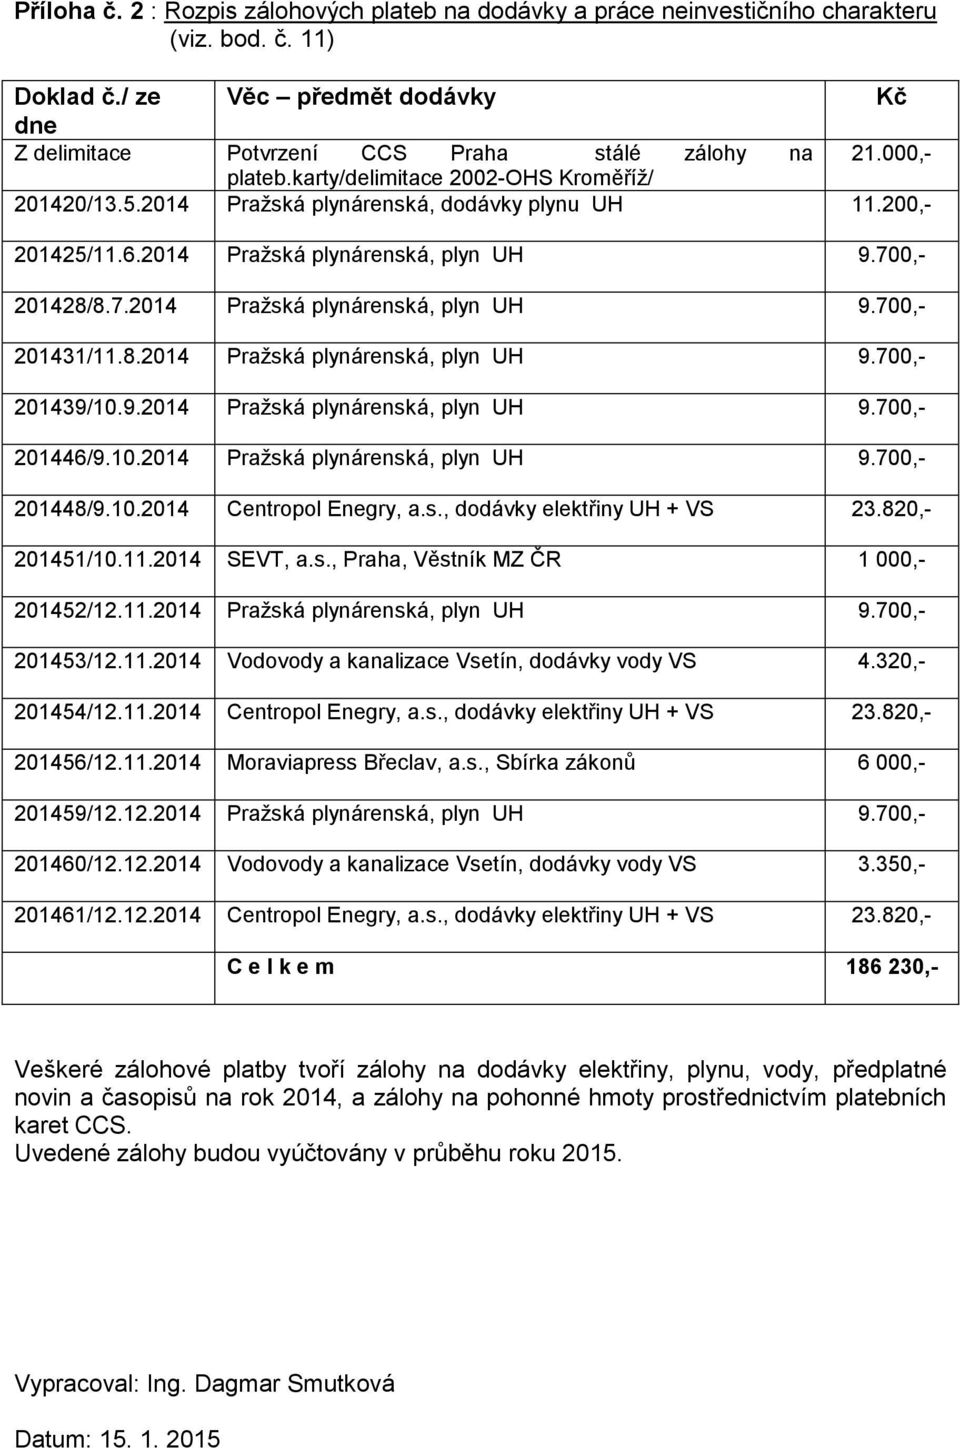 8.2014 Pražská plynárenská, plyn UH 9.700,- 201439/10.9.2014 Pražská plynárenská, plyn UH 9.700,- 201446/9.10.2014 Pražská plynárenská, plyn UH 9.700,- 201448/9.10.2014 Centropol Enegry, a.s., dodávky elektřiny UH + VS 23.